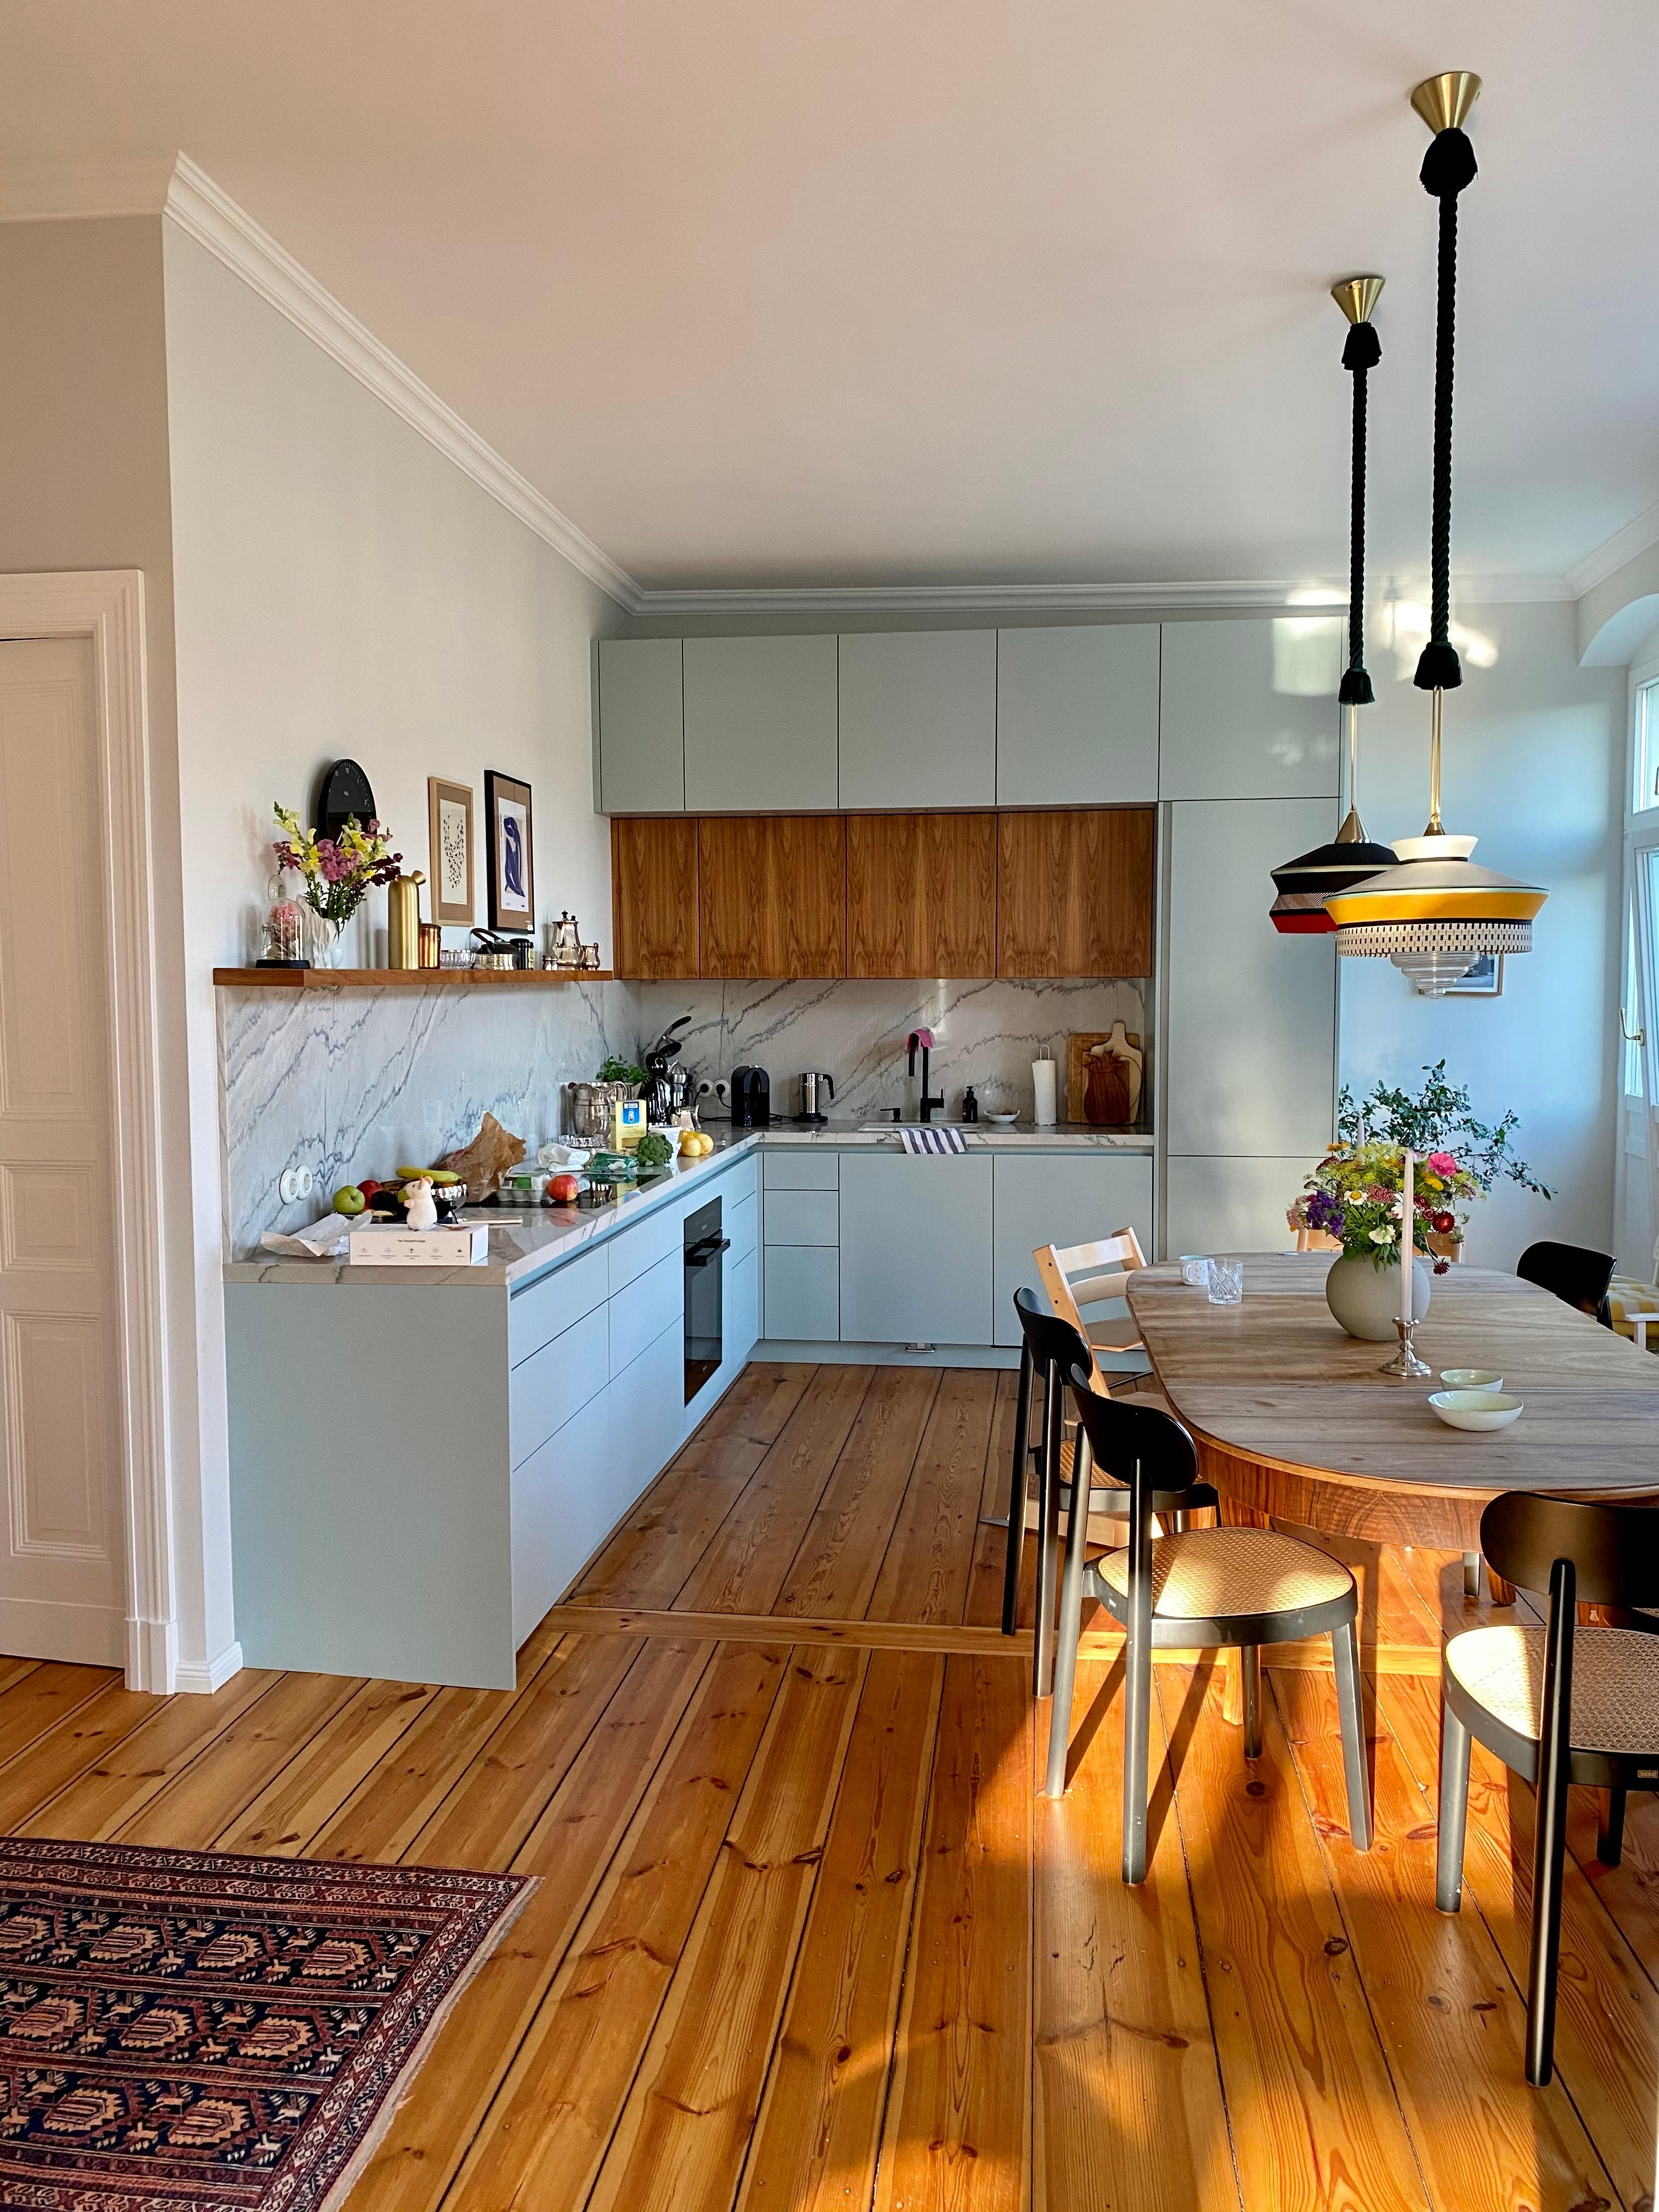 Willkommen in unserer Küche - wie gefällt euch die Mischung aus Holz und den blaugrauen Fronten?

#küche #wohnküche